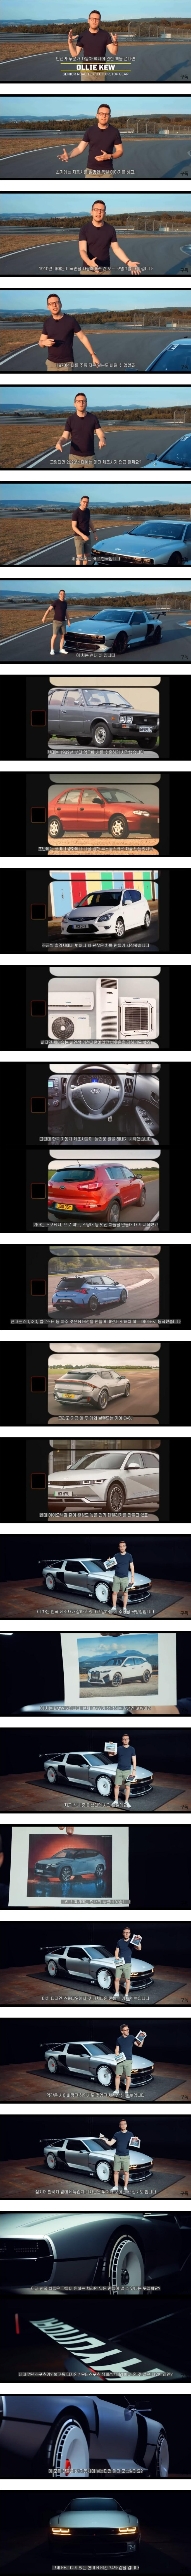 한국 자동차에 대한 BBC 기자의 평가